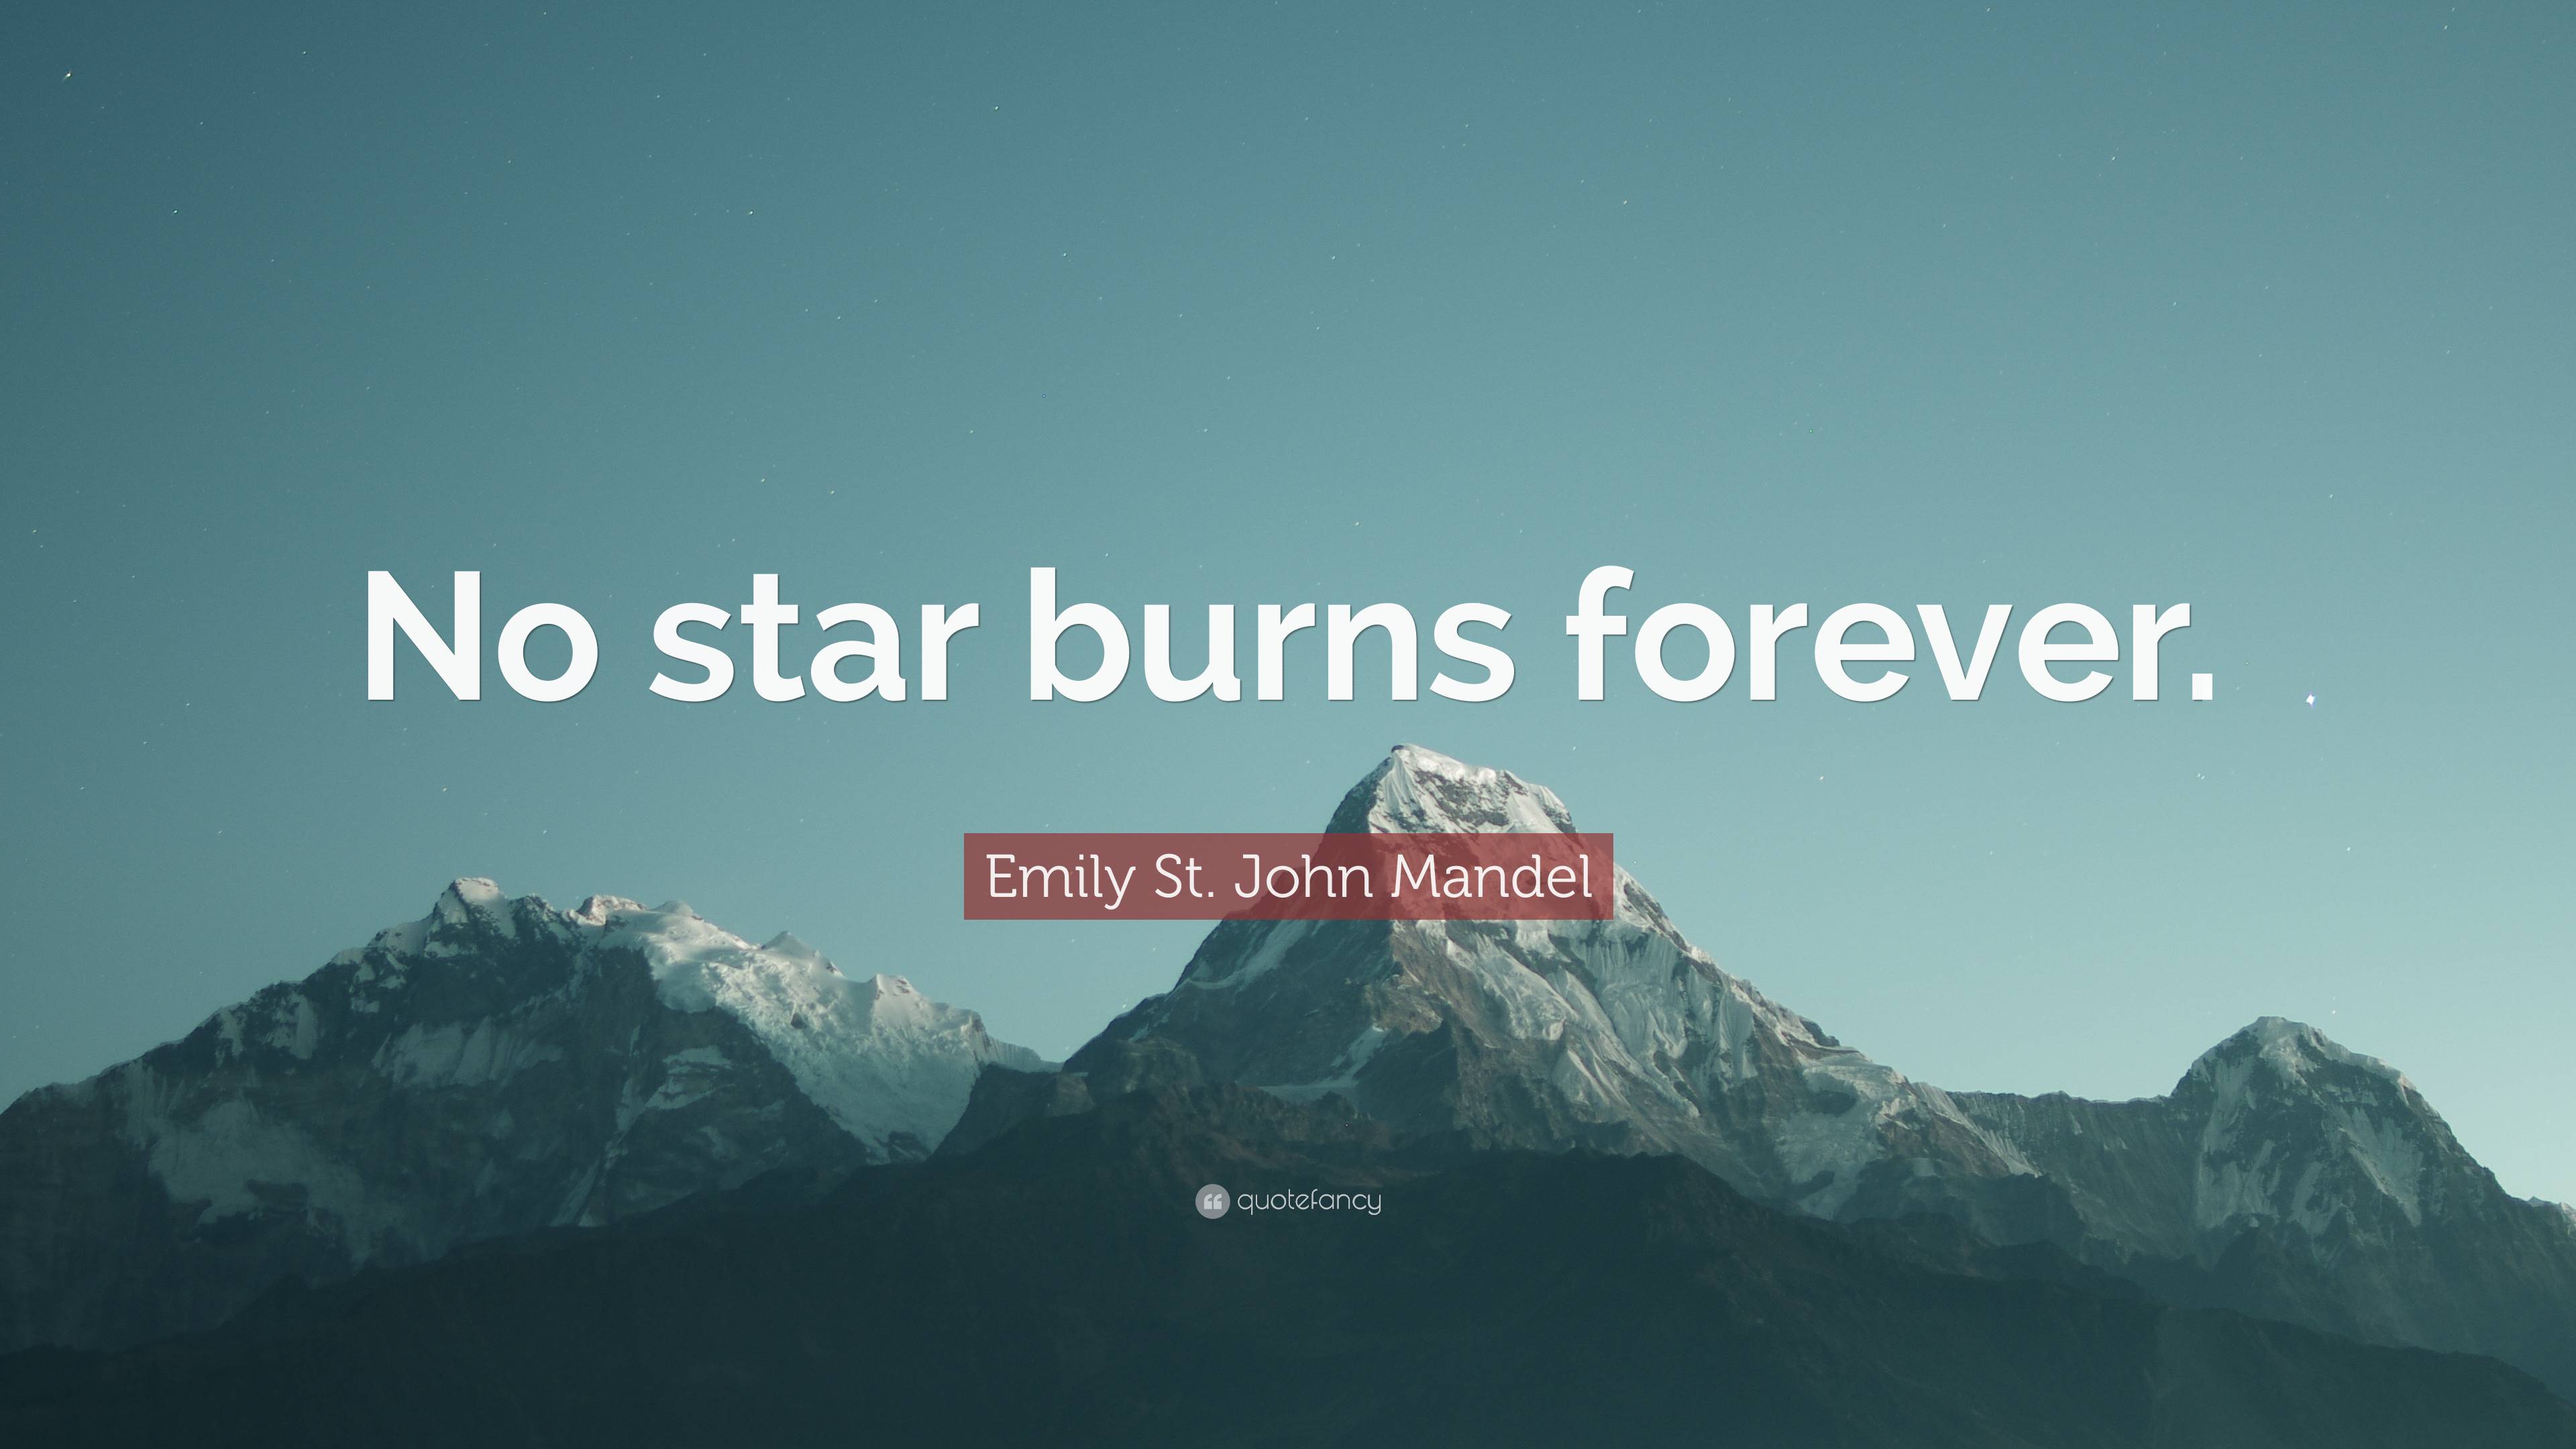 Emily St. John Mandel Quote: “No star burns forever.”